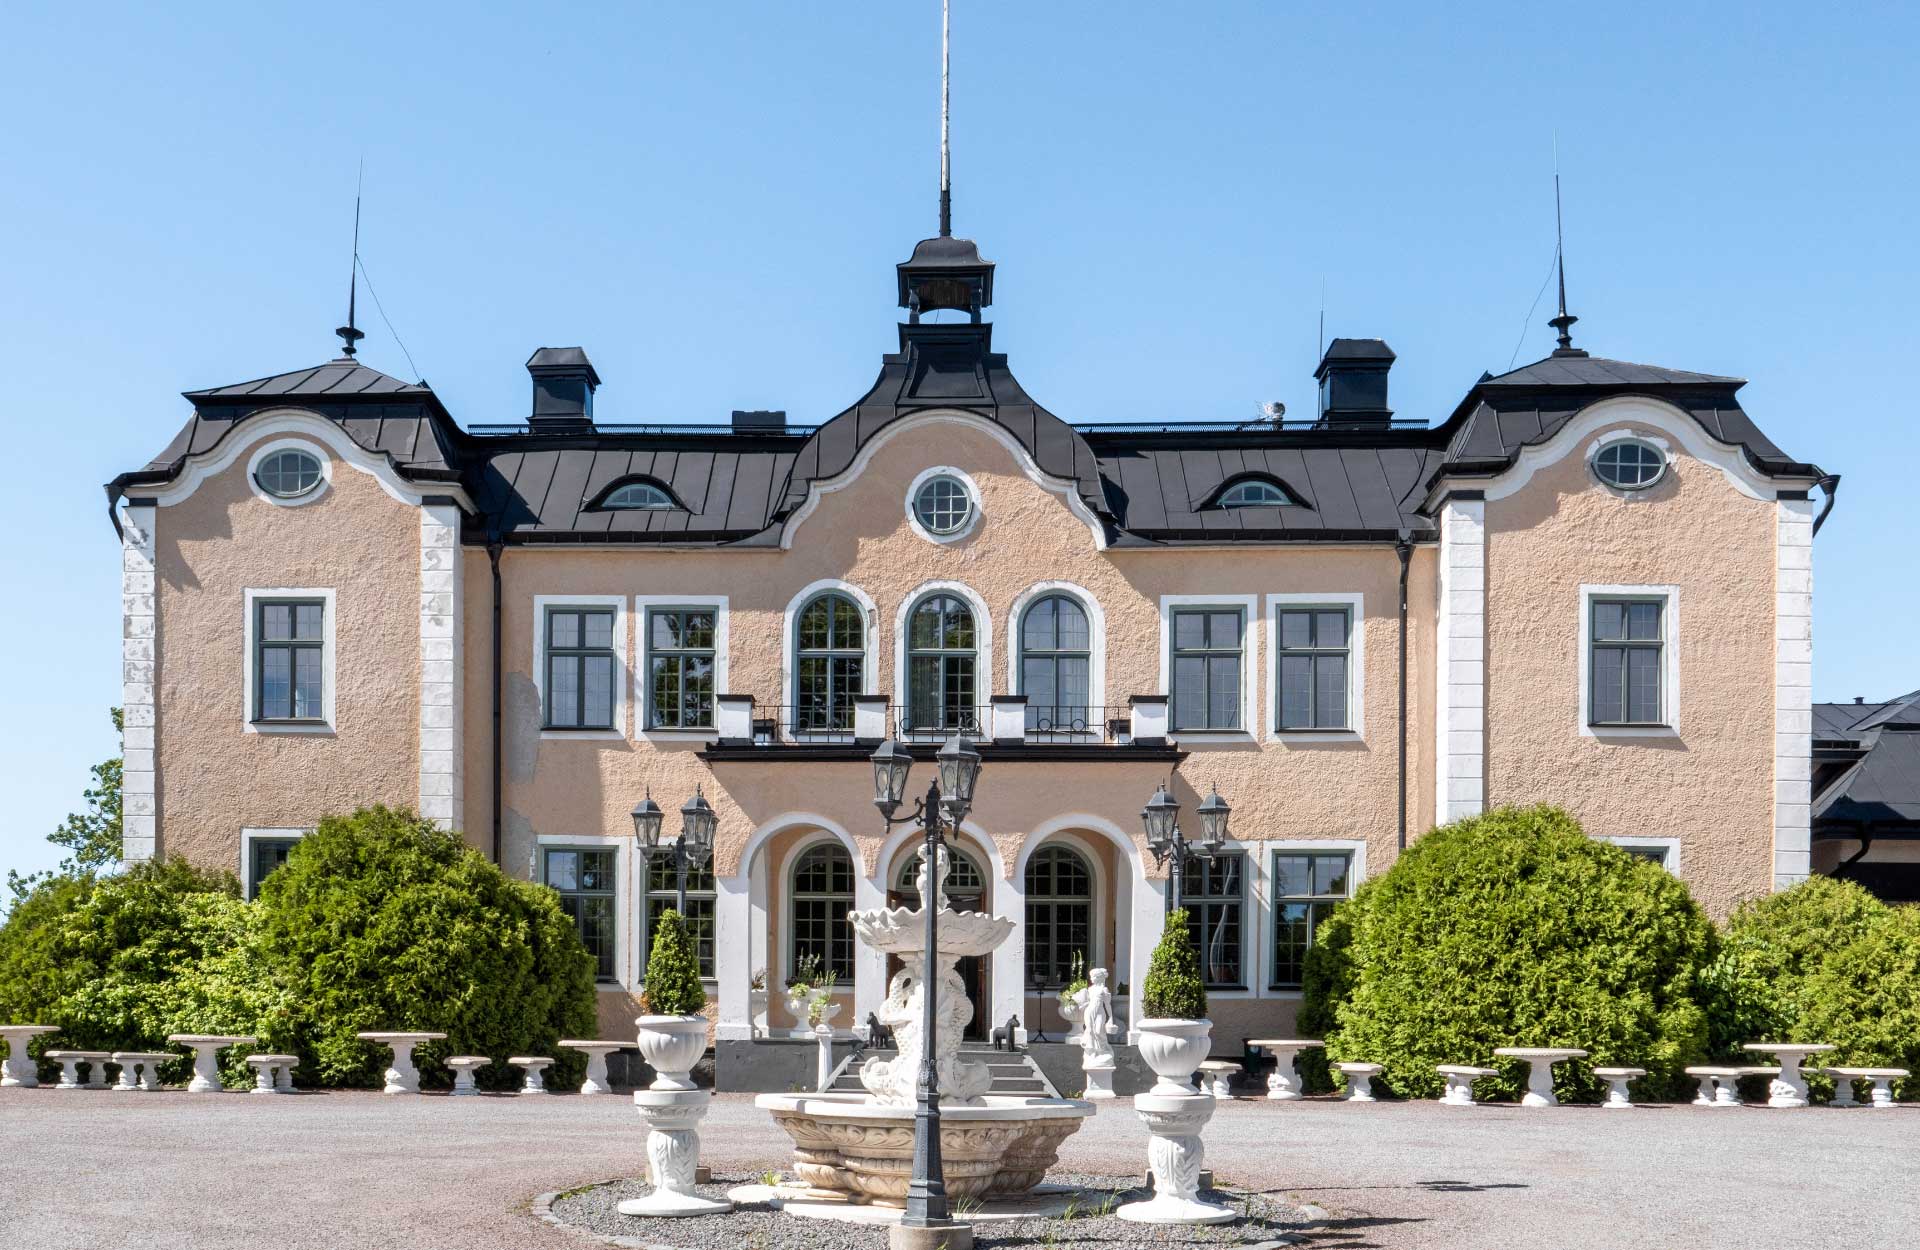 Johannesbergs slott